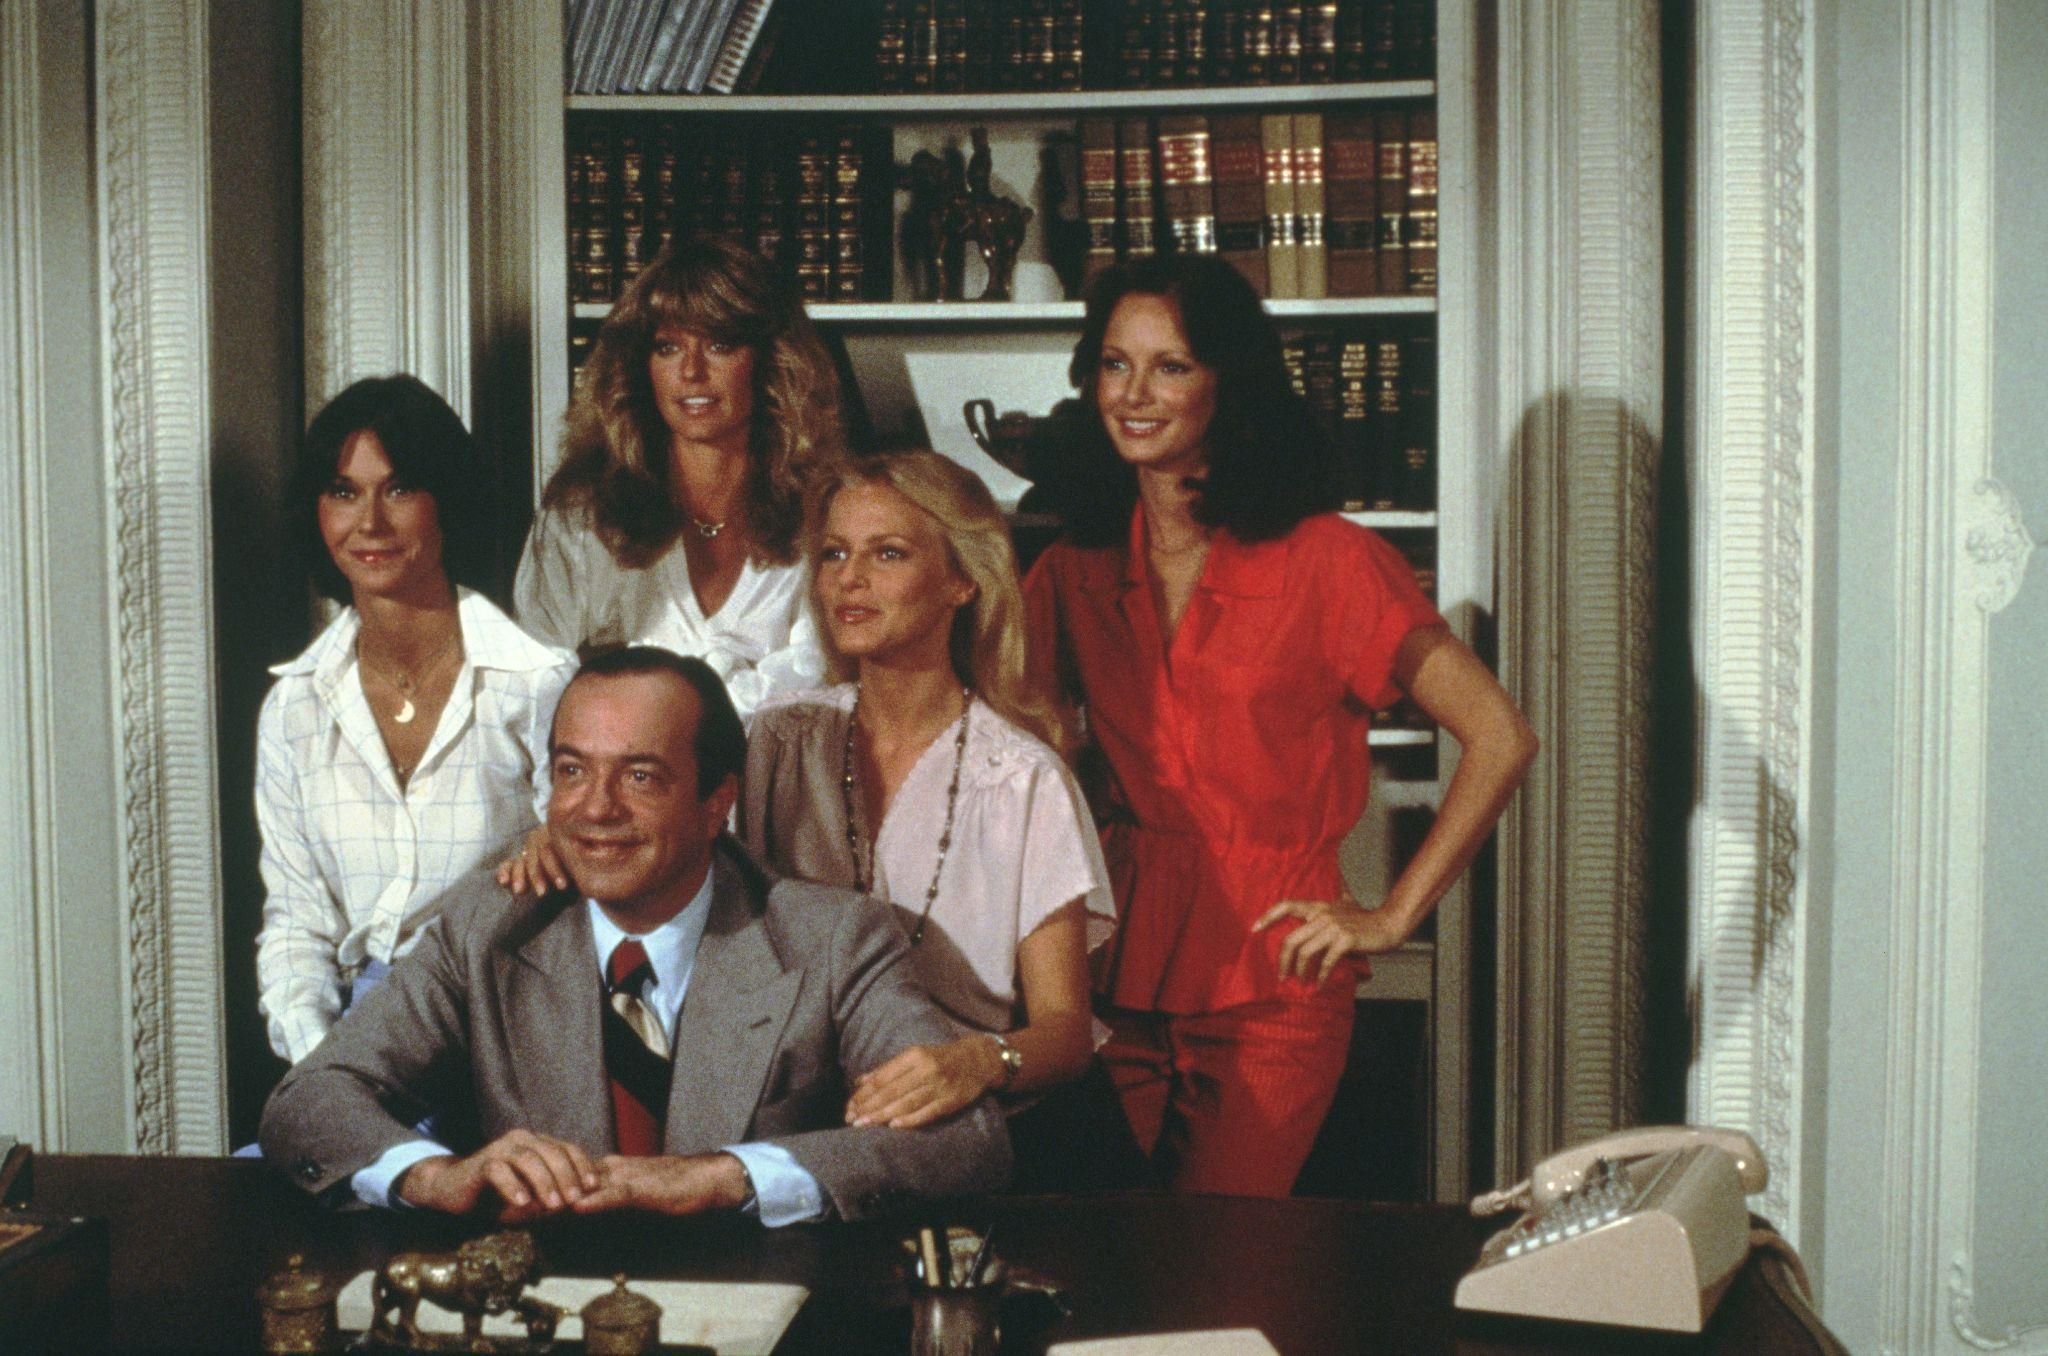 1977 Charlieu2019s Angels (David Doyle, Kate Jackson, Farrah Fawcett, Cheryl Ladd & Jaclyn Smith)